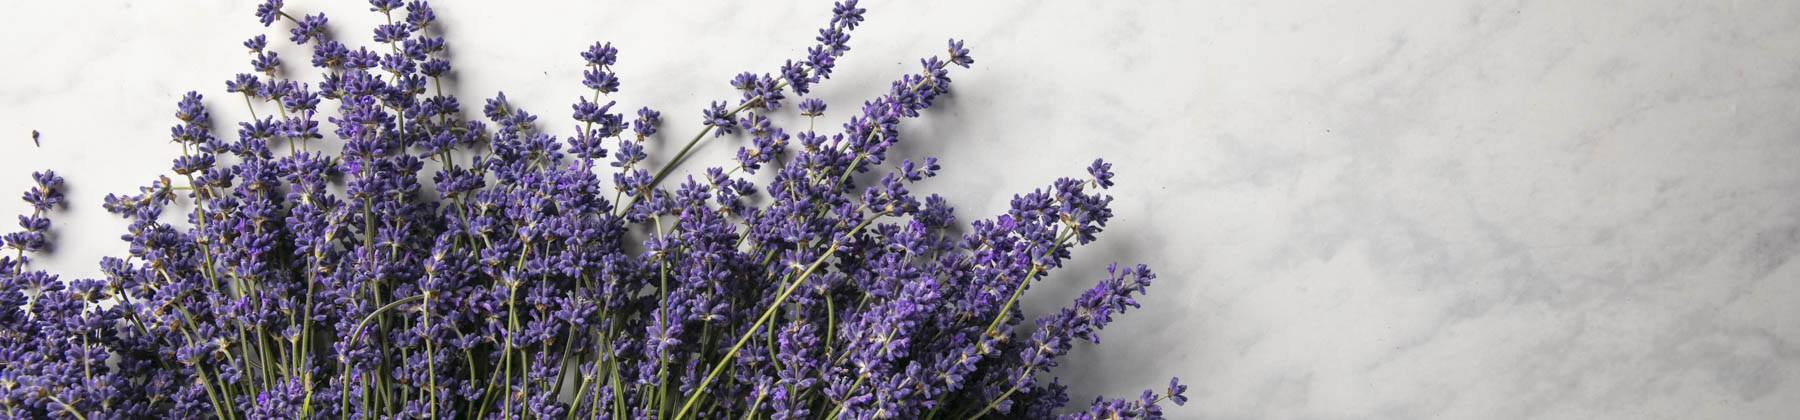 Fresh Lavender Bunches & Plants